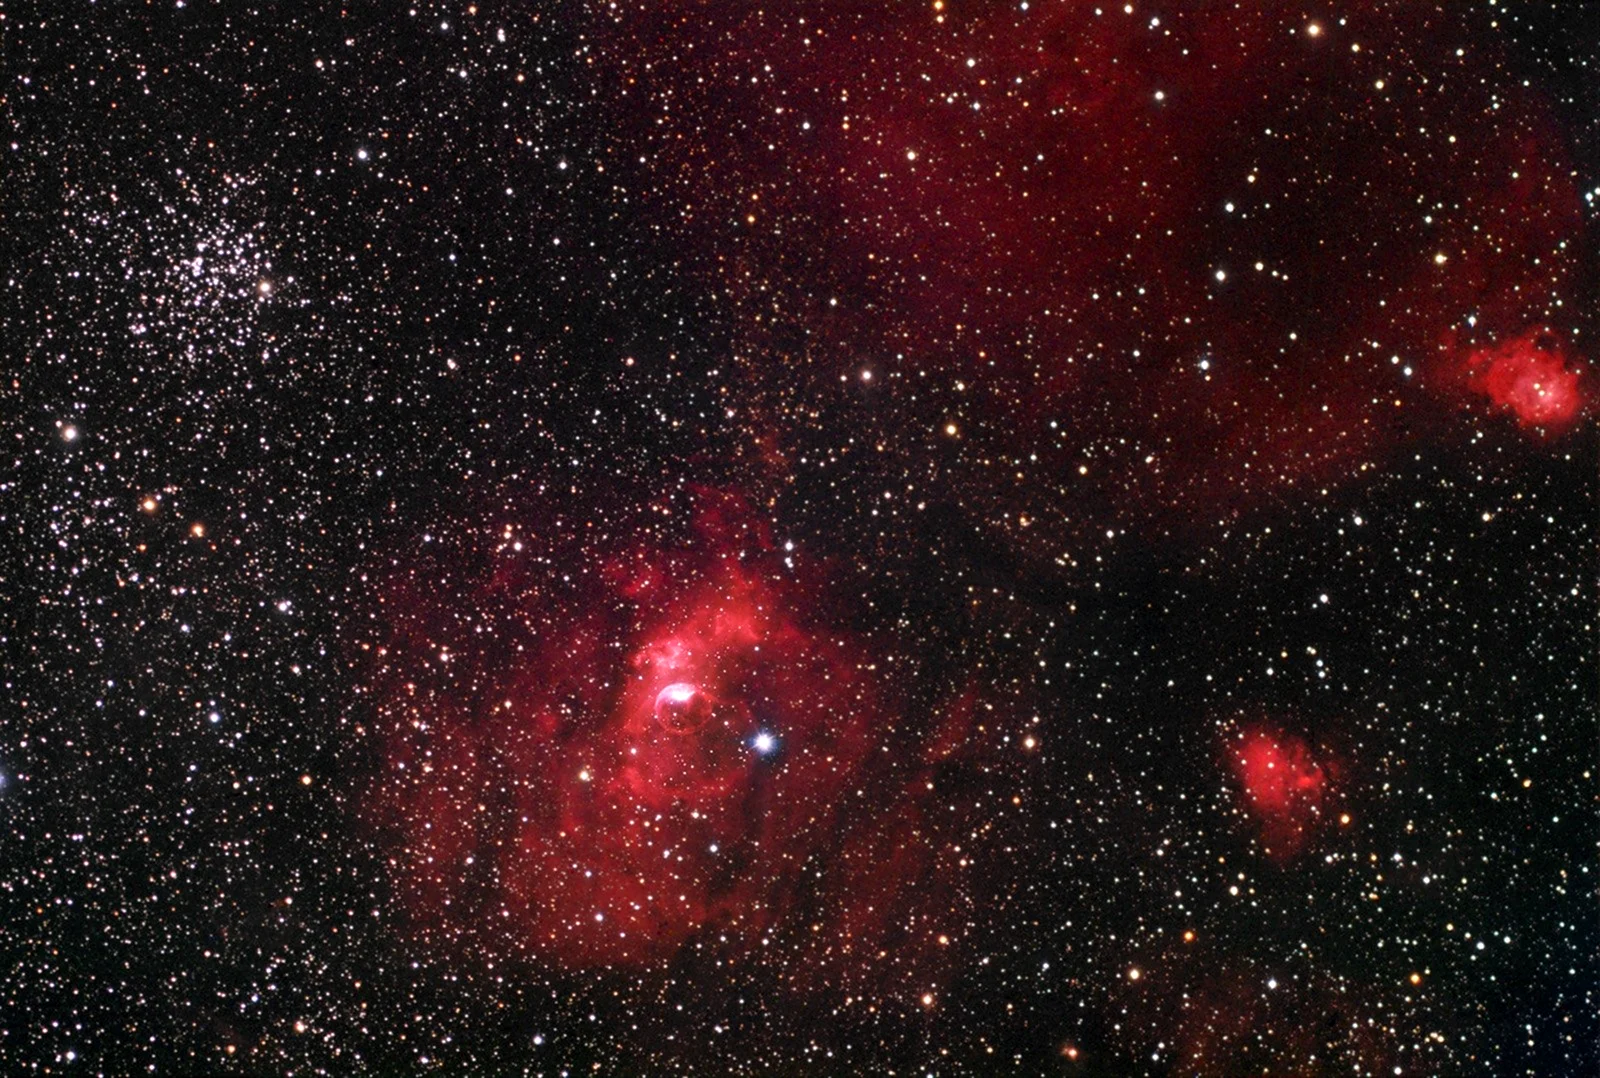 NGC 7538